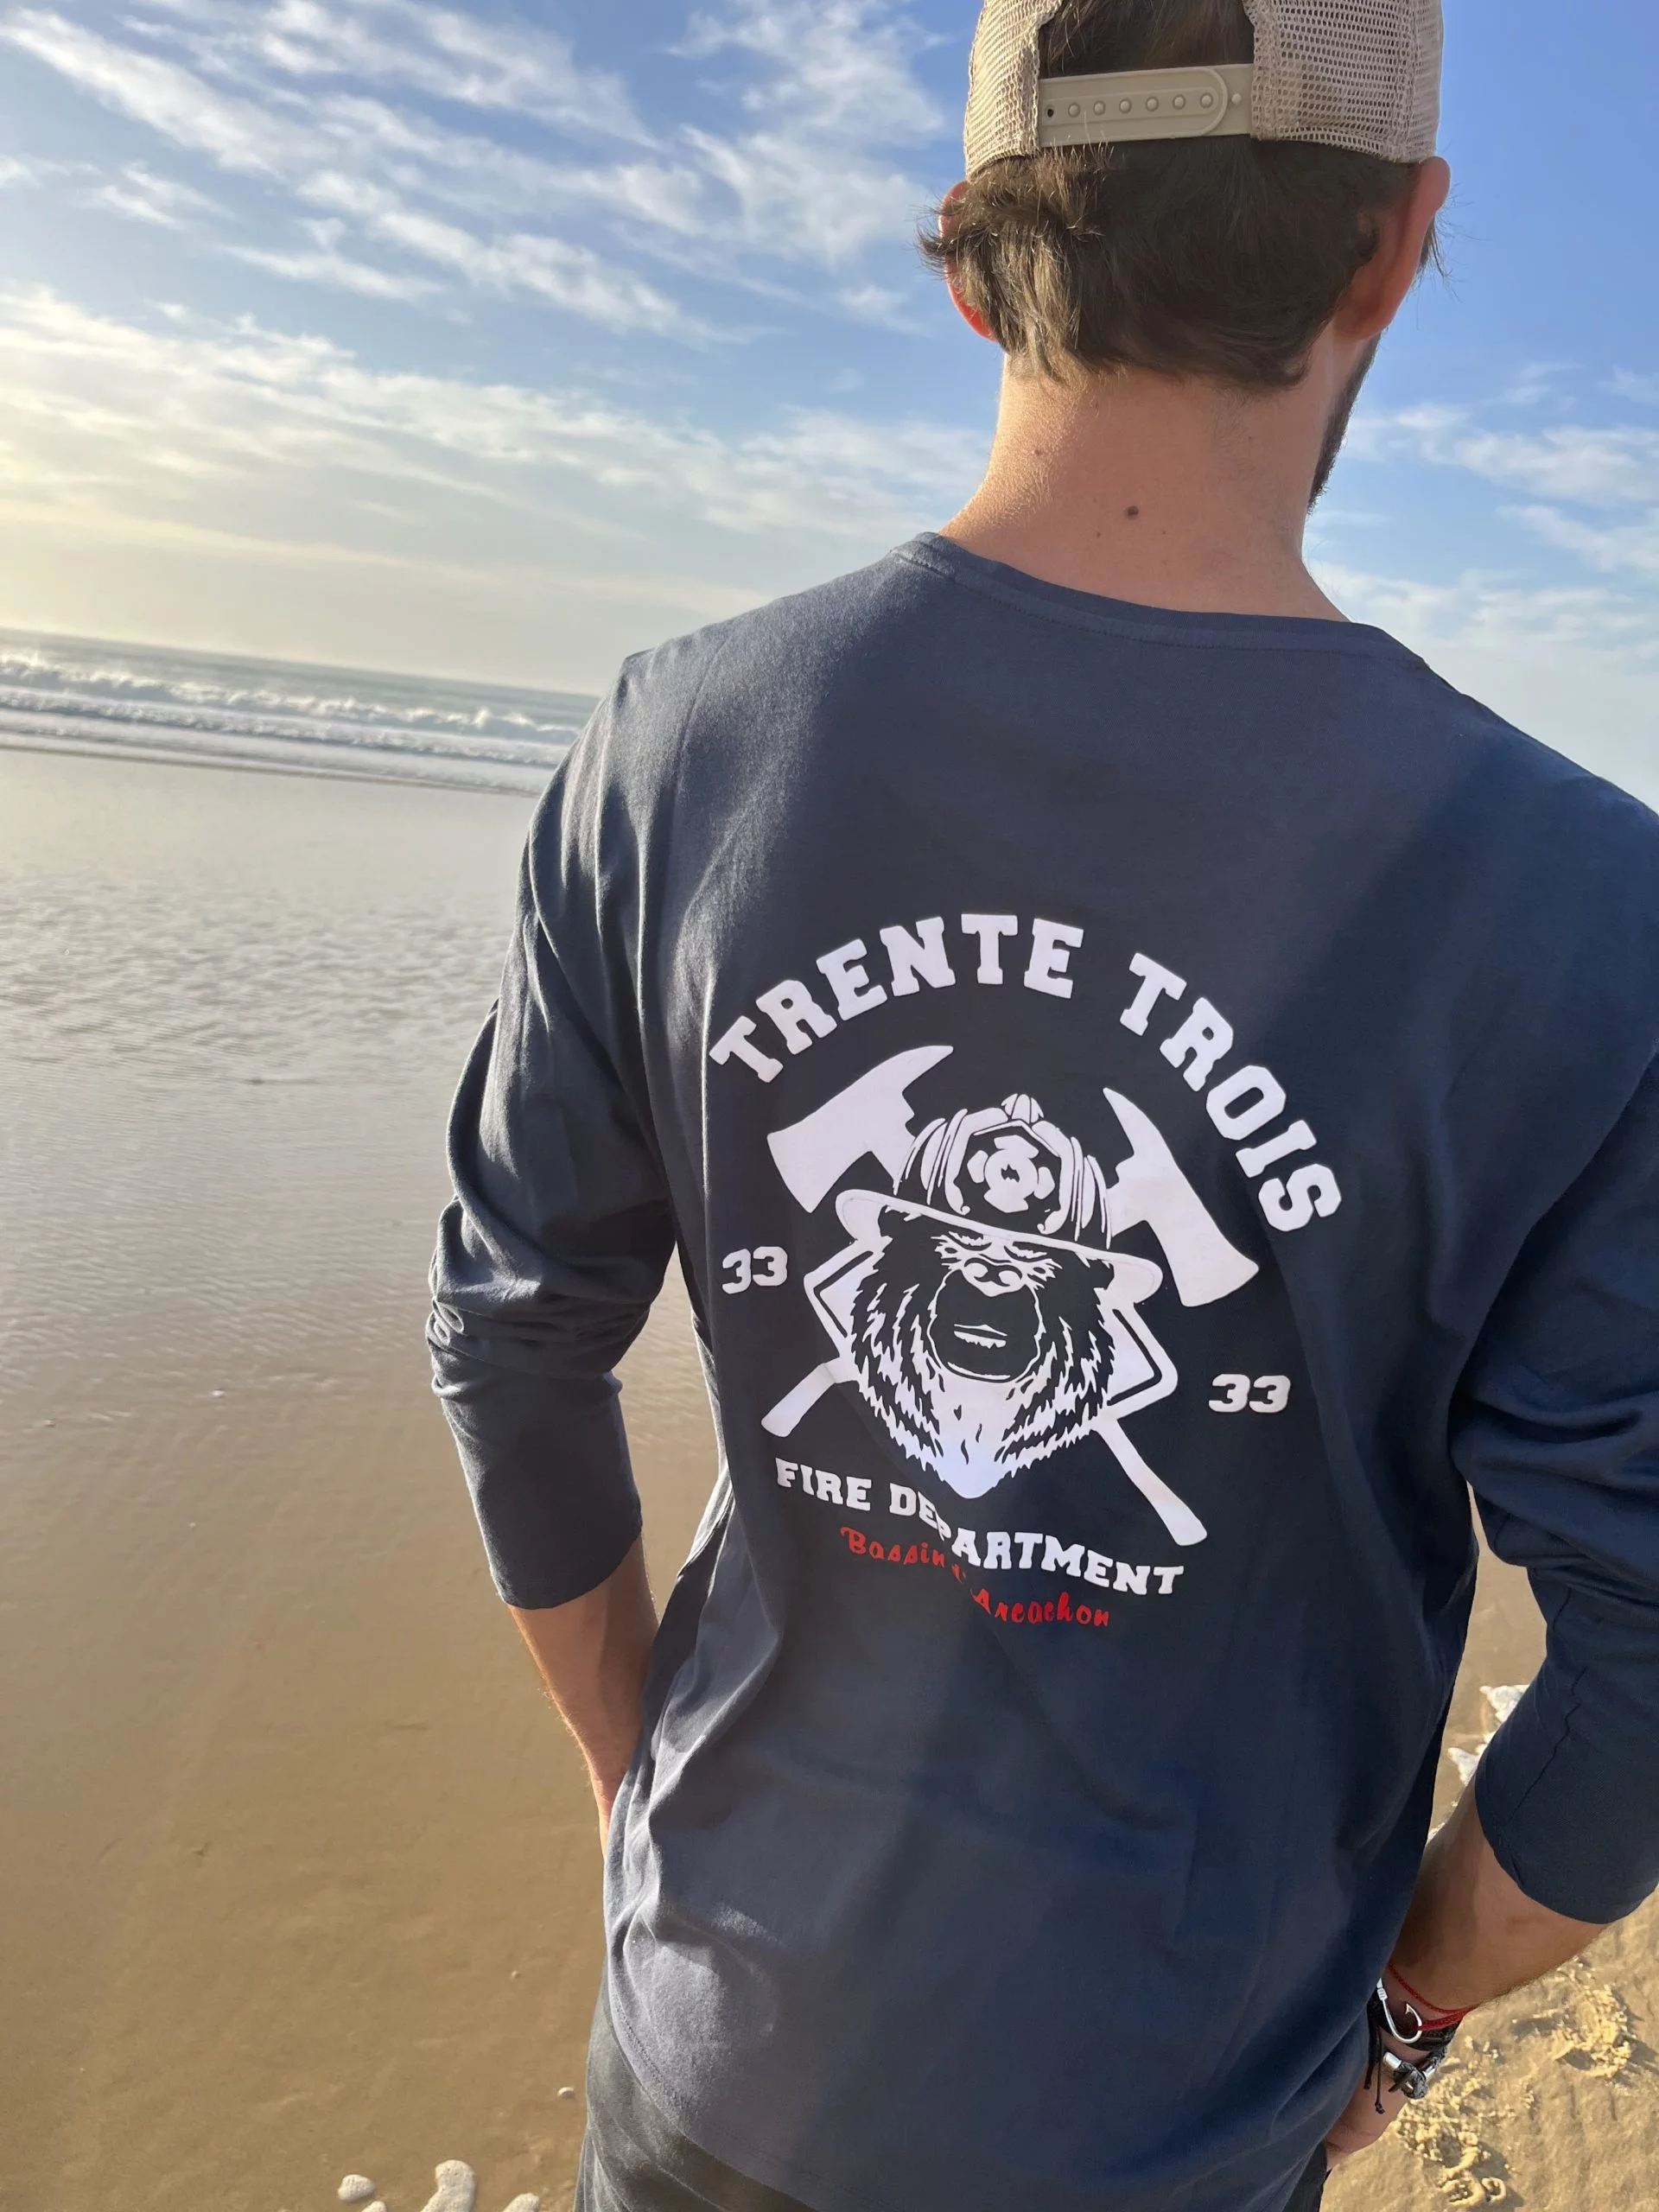 Un tee-shirt à manches longues marine pour homme, estampillé "Firefighter" de la marque régionale 33.